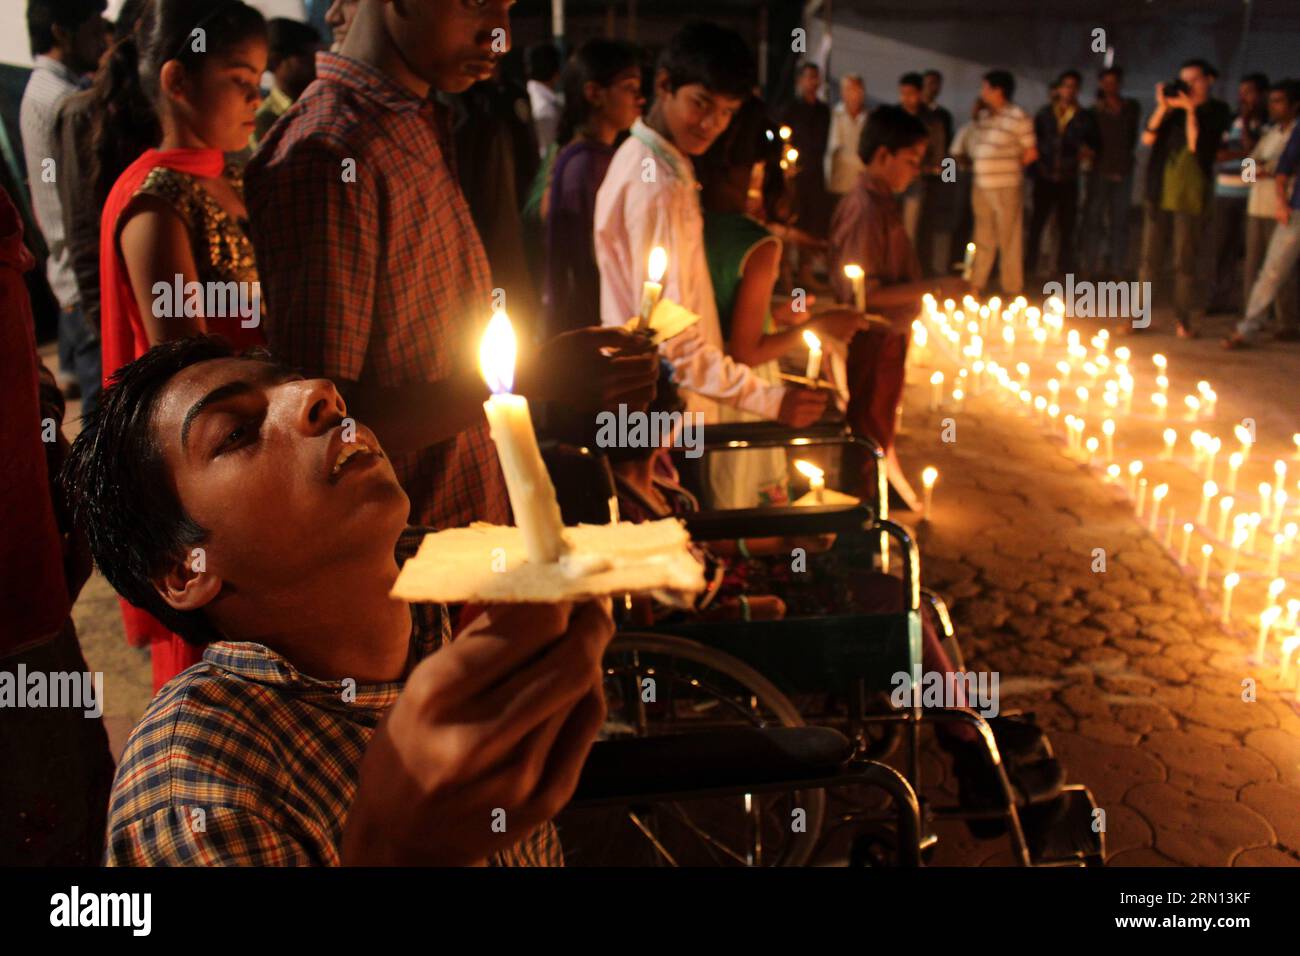 Kinder der zweiten Generation, die mit angeborenen Krankheiten geboren wurden, die durch die Exposition ihrer Eltern gegenüber dem Gasleck bei der Gastragödie von Bhopal 1984 verursacht wurden, nehmen an einer Mahnwache bei Kerzenlicht Teil, um den bei der Tragödie getöteten Menschen zu huldigen, und zwar vor dem 30. Jahrestag der Gaskatastrophe in Bhopal, Indien. November 30, 2014. Es wird angenommen, dass Tausende von Menschen bei der Katastrophe getötet wurden. ) INDIEN-BHOPAL-CANDLELIGHT-GAS-LECKAGE Stringer PUBLICATIONxNOTxINxCHN Kinder der zweiten Generation, DIE mit angeborenen Erkrankungen geboren wurden, die durch die Exposition ihrer Eltern gegenüber dem Gasleck in der Bhopal-Gas-Tragödie 1984 PA VERURSACHT wurden Stockfoto